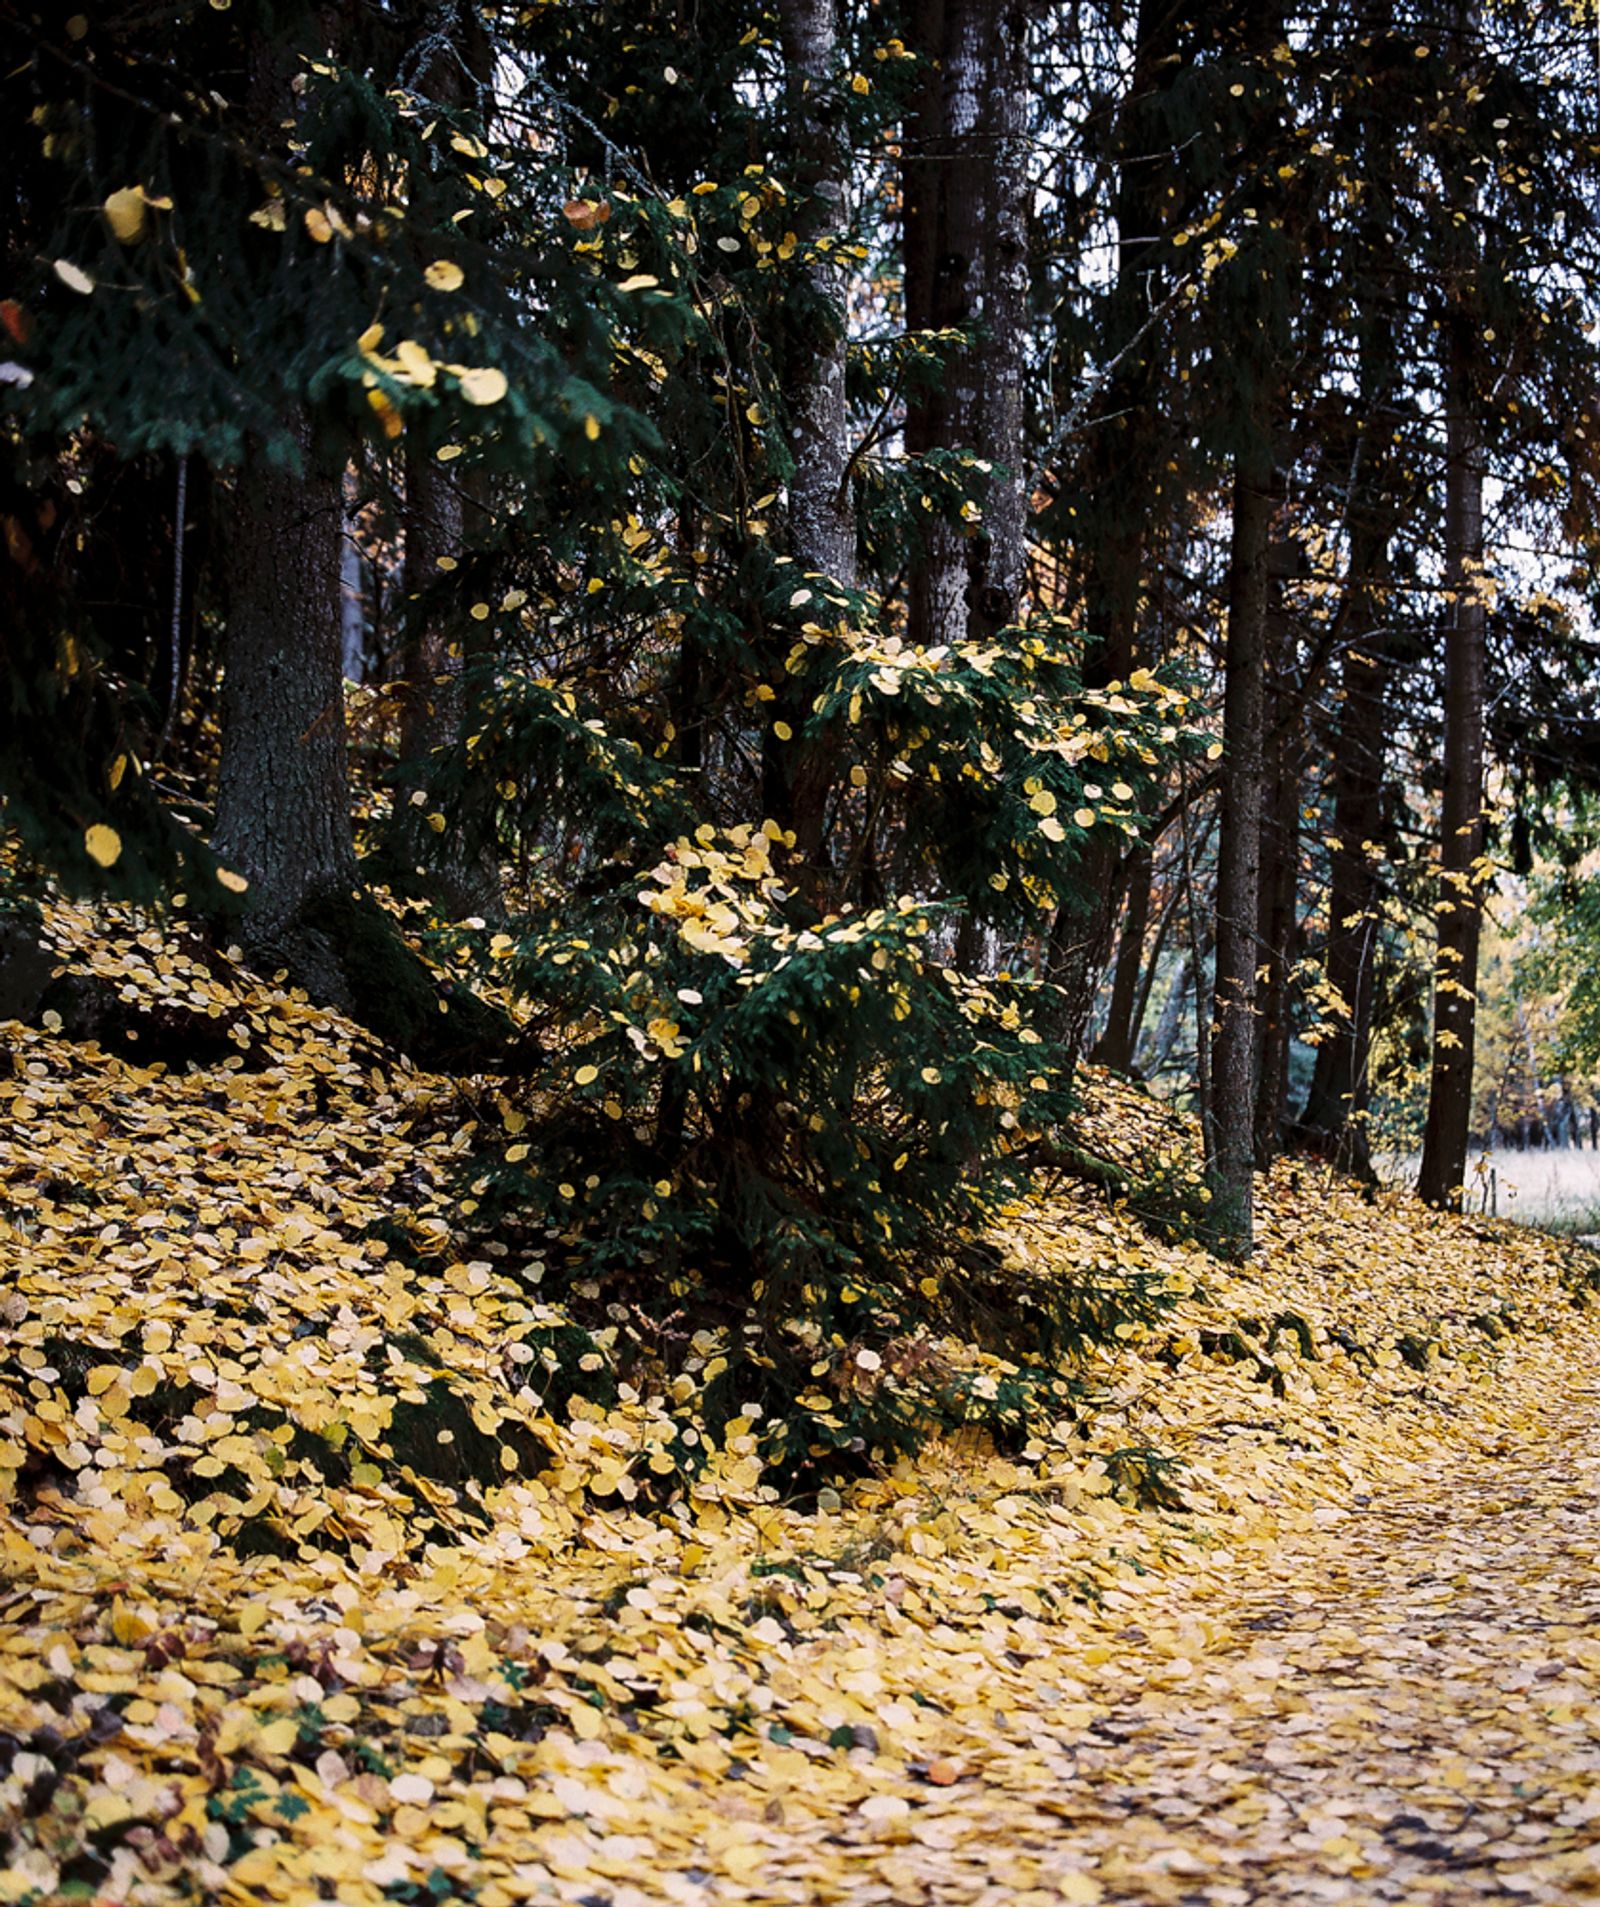 © Sanni Saarinen - The autumn, Turku, October 2018